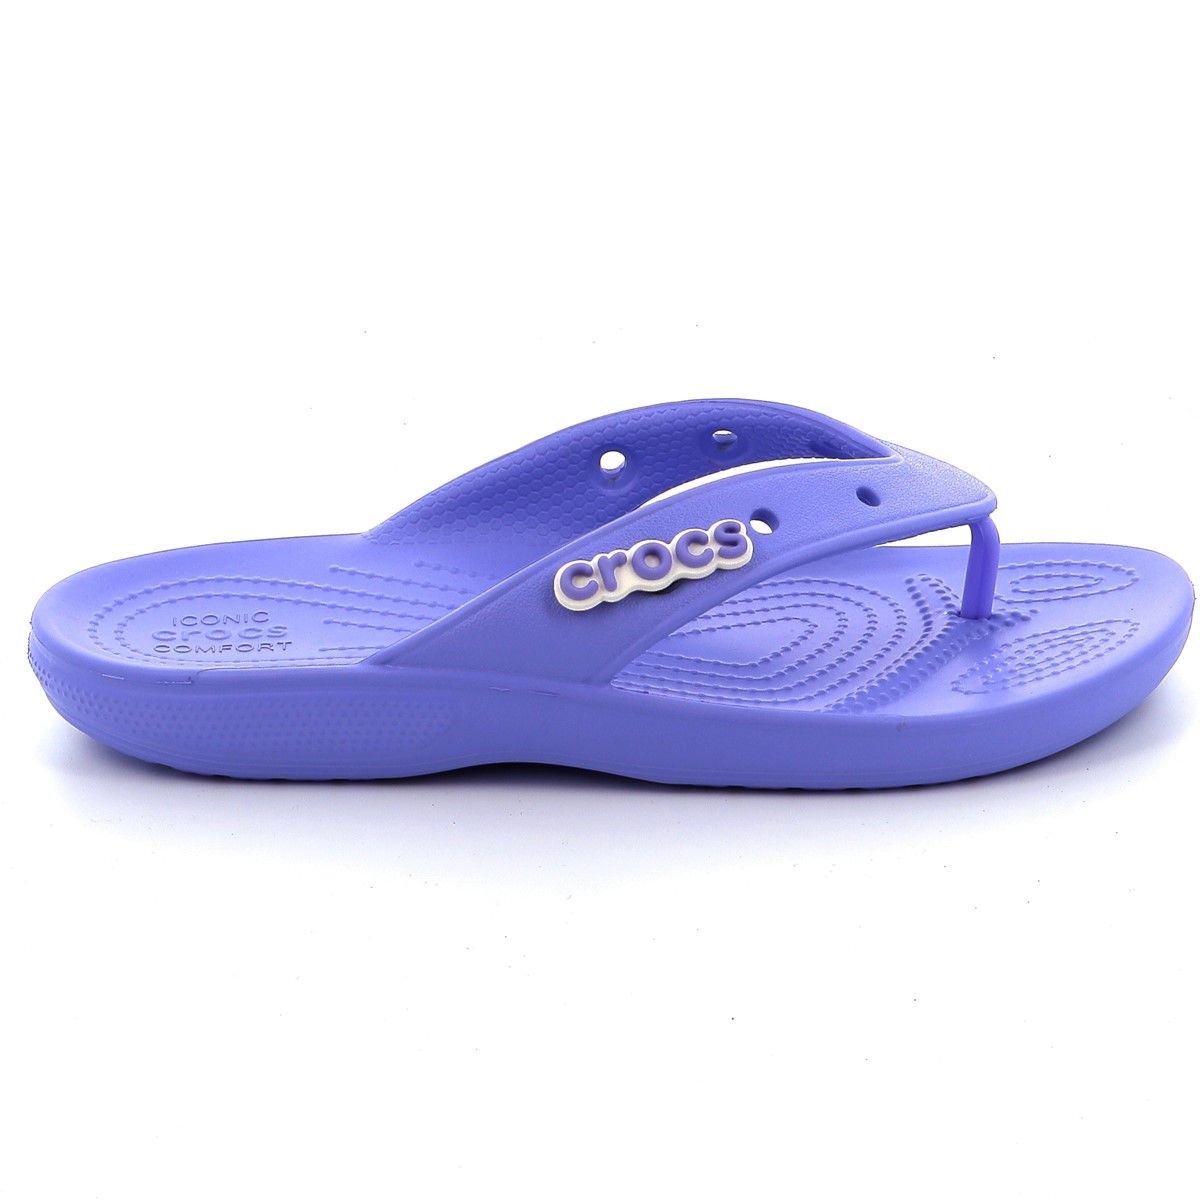 Γυναικεία Σαγιονάρα Crocs Classic Crocs Flip Χρώματος Μωβ 207713-5PY